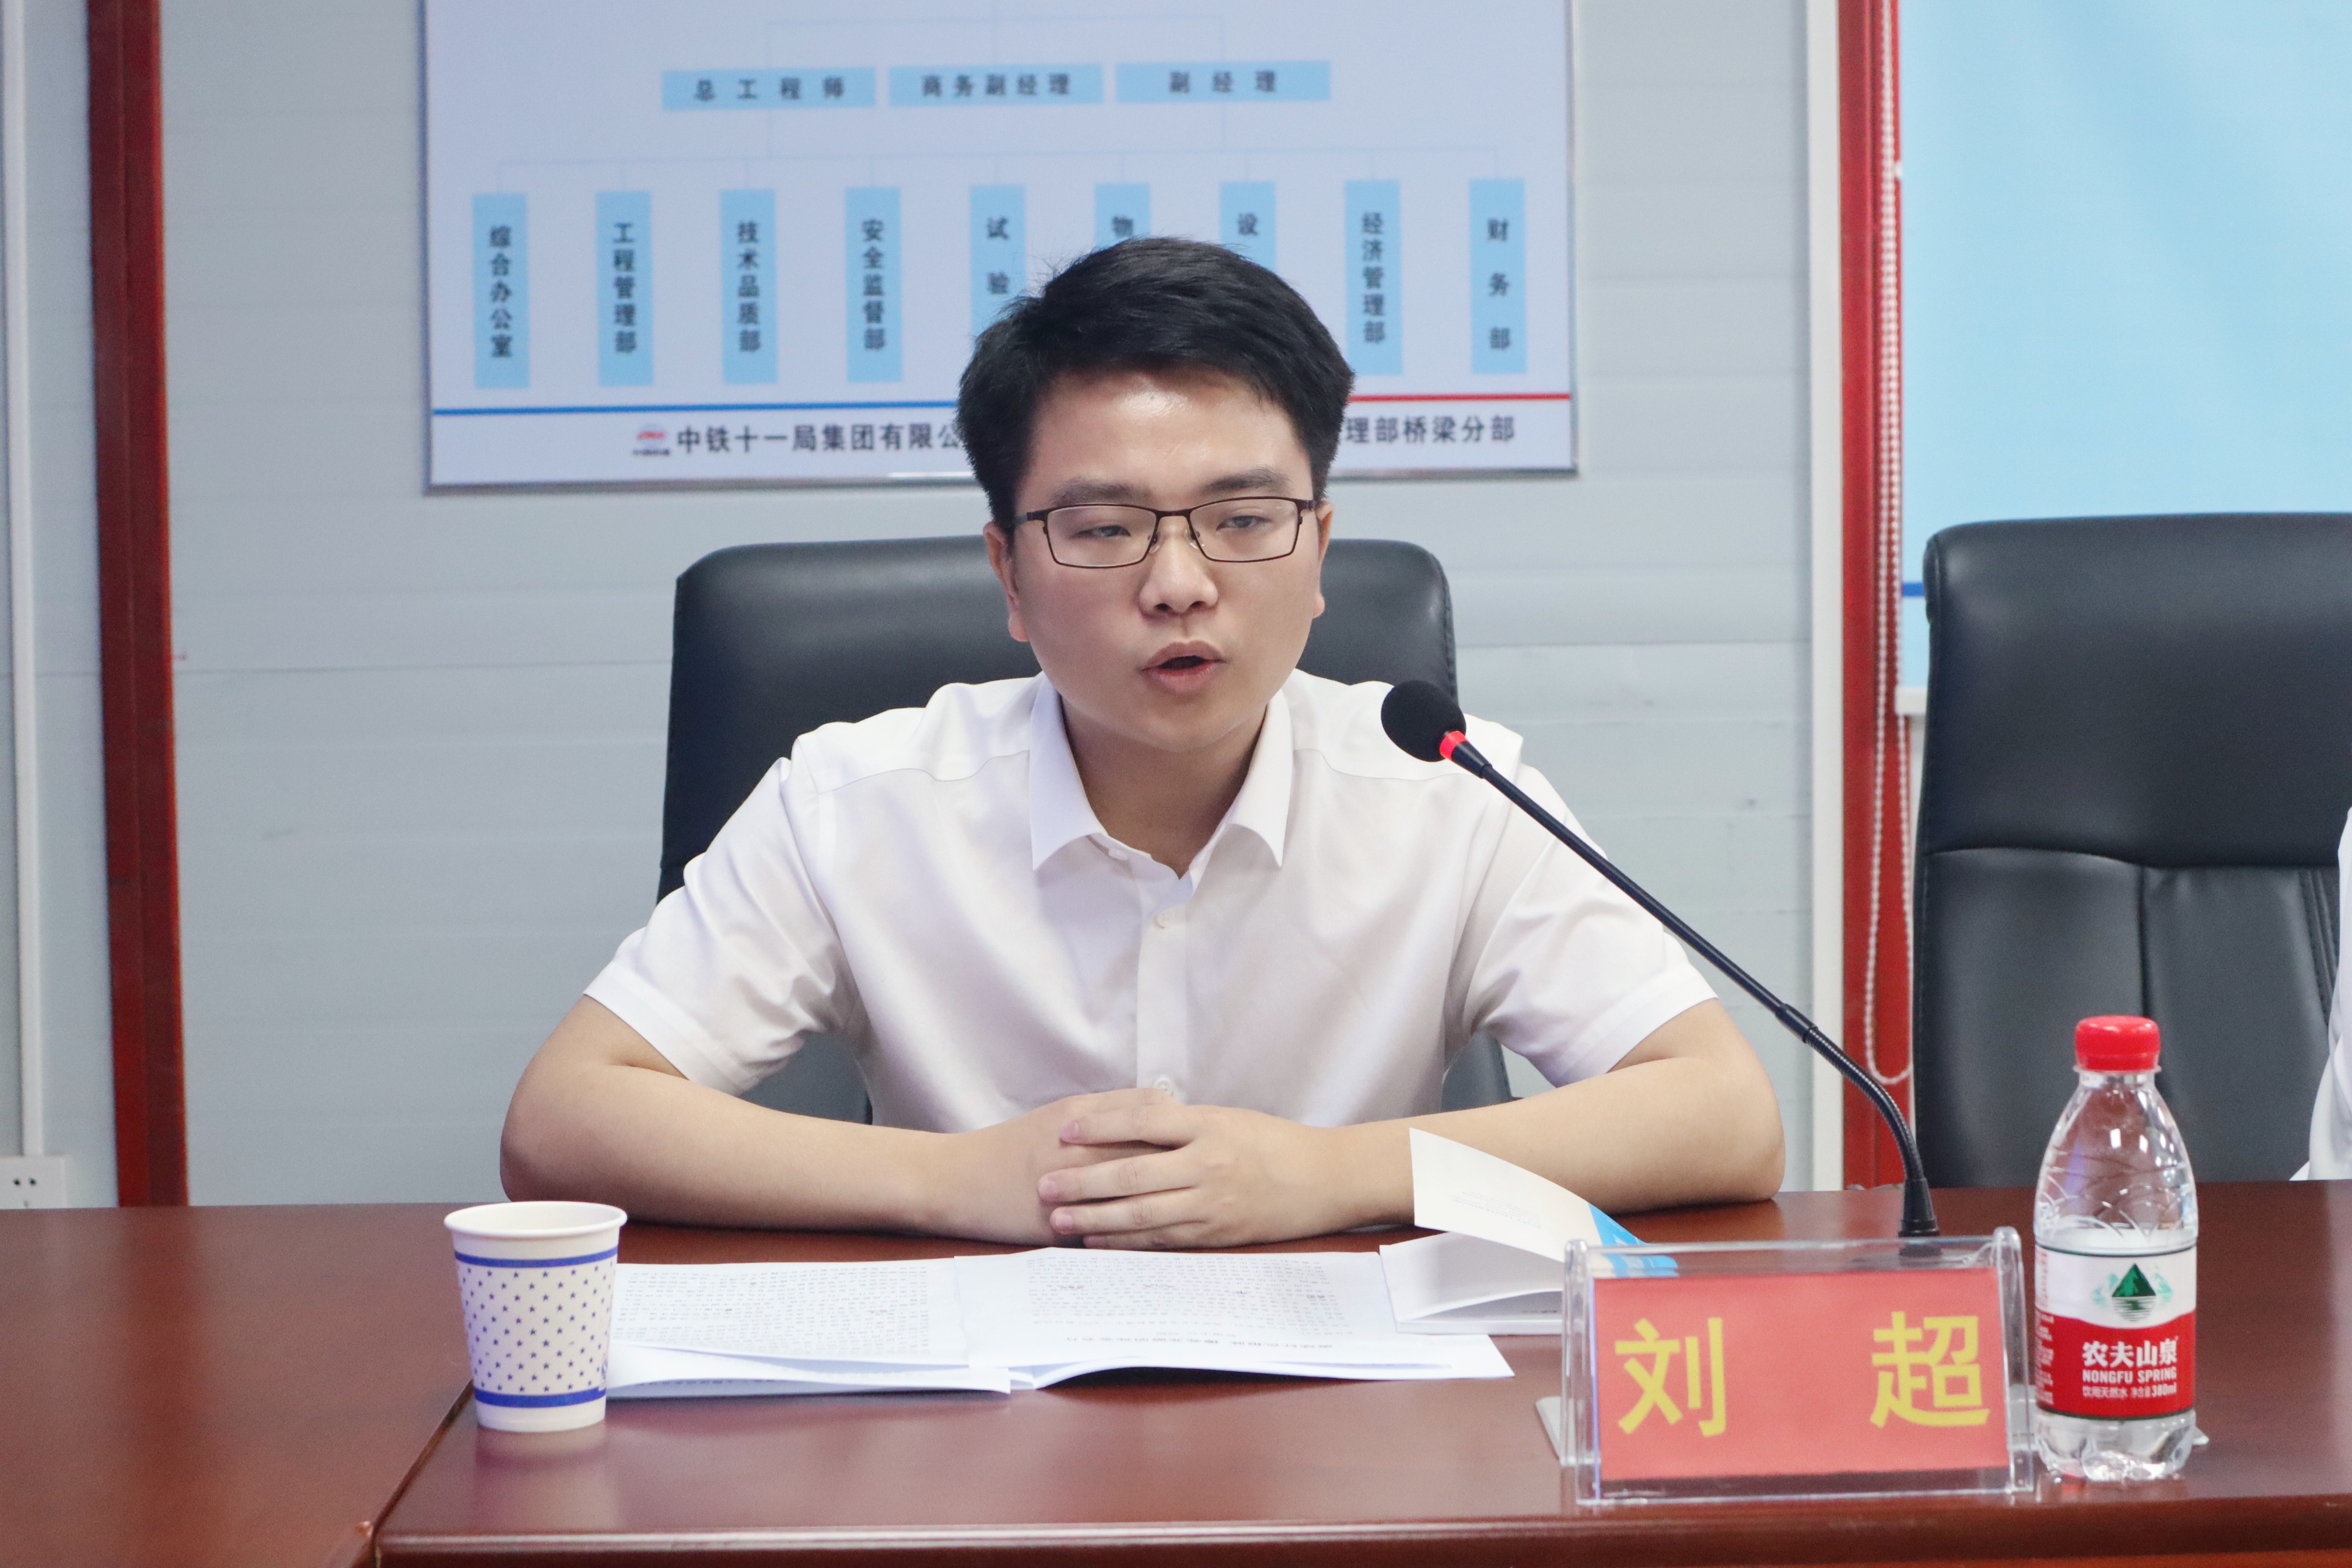 龙游县铁路轨道交通建设管理中心“8090宣讲团”成员刘超宣讲